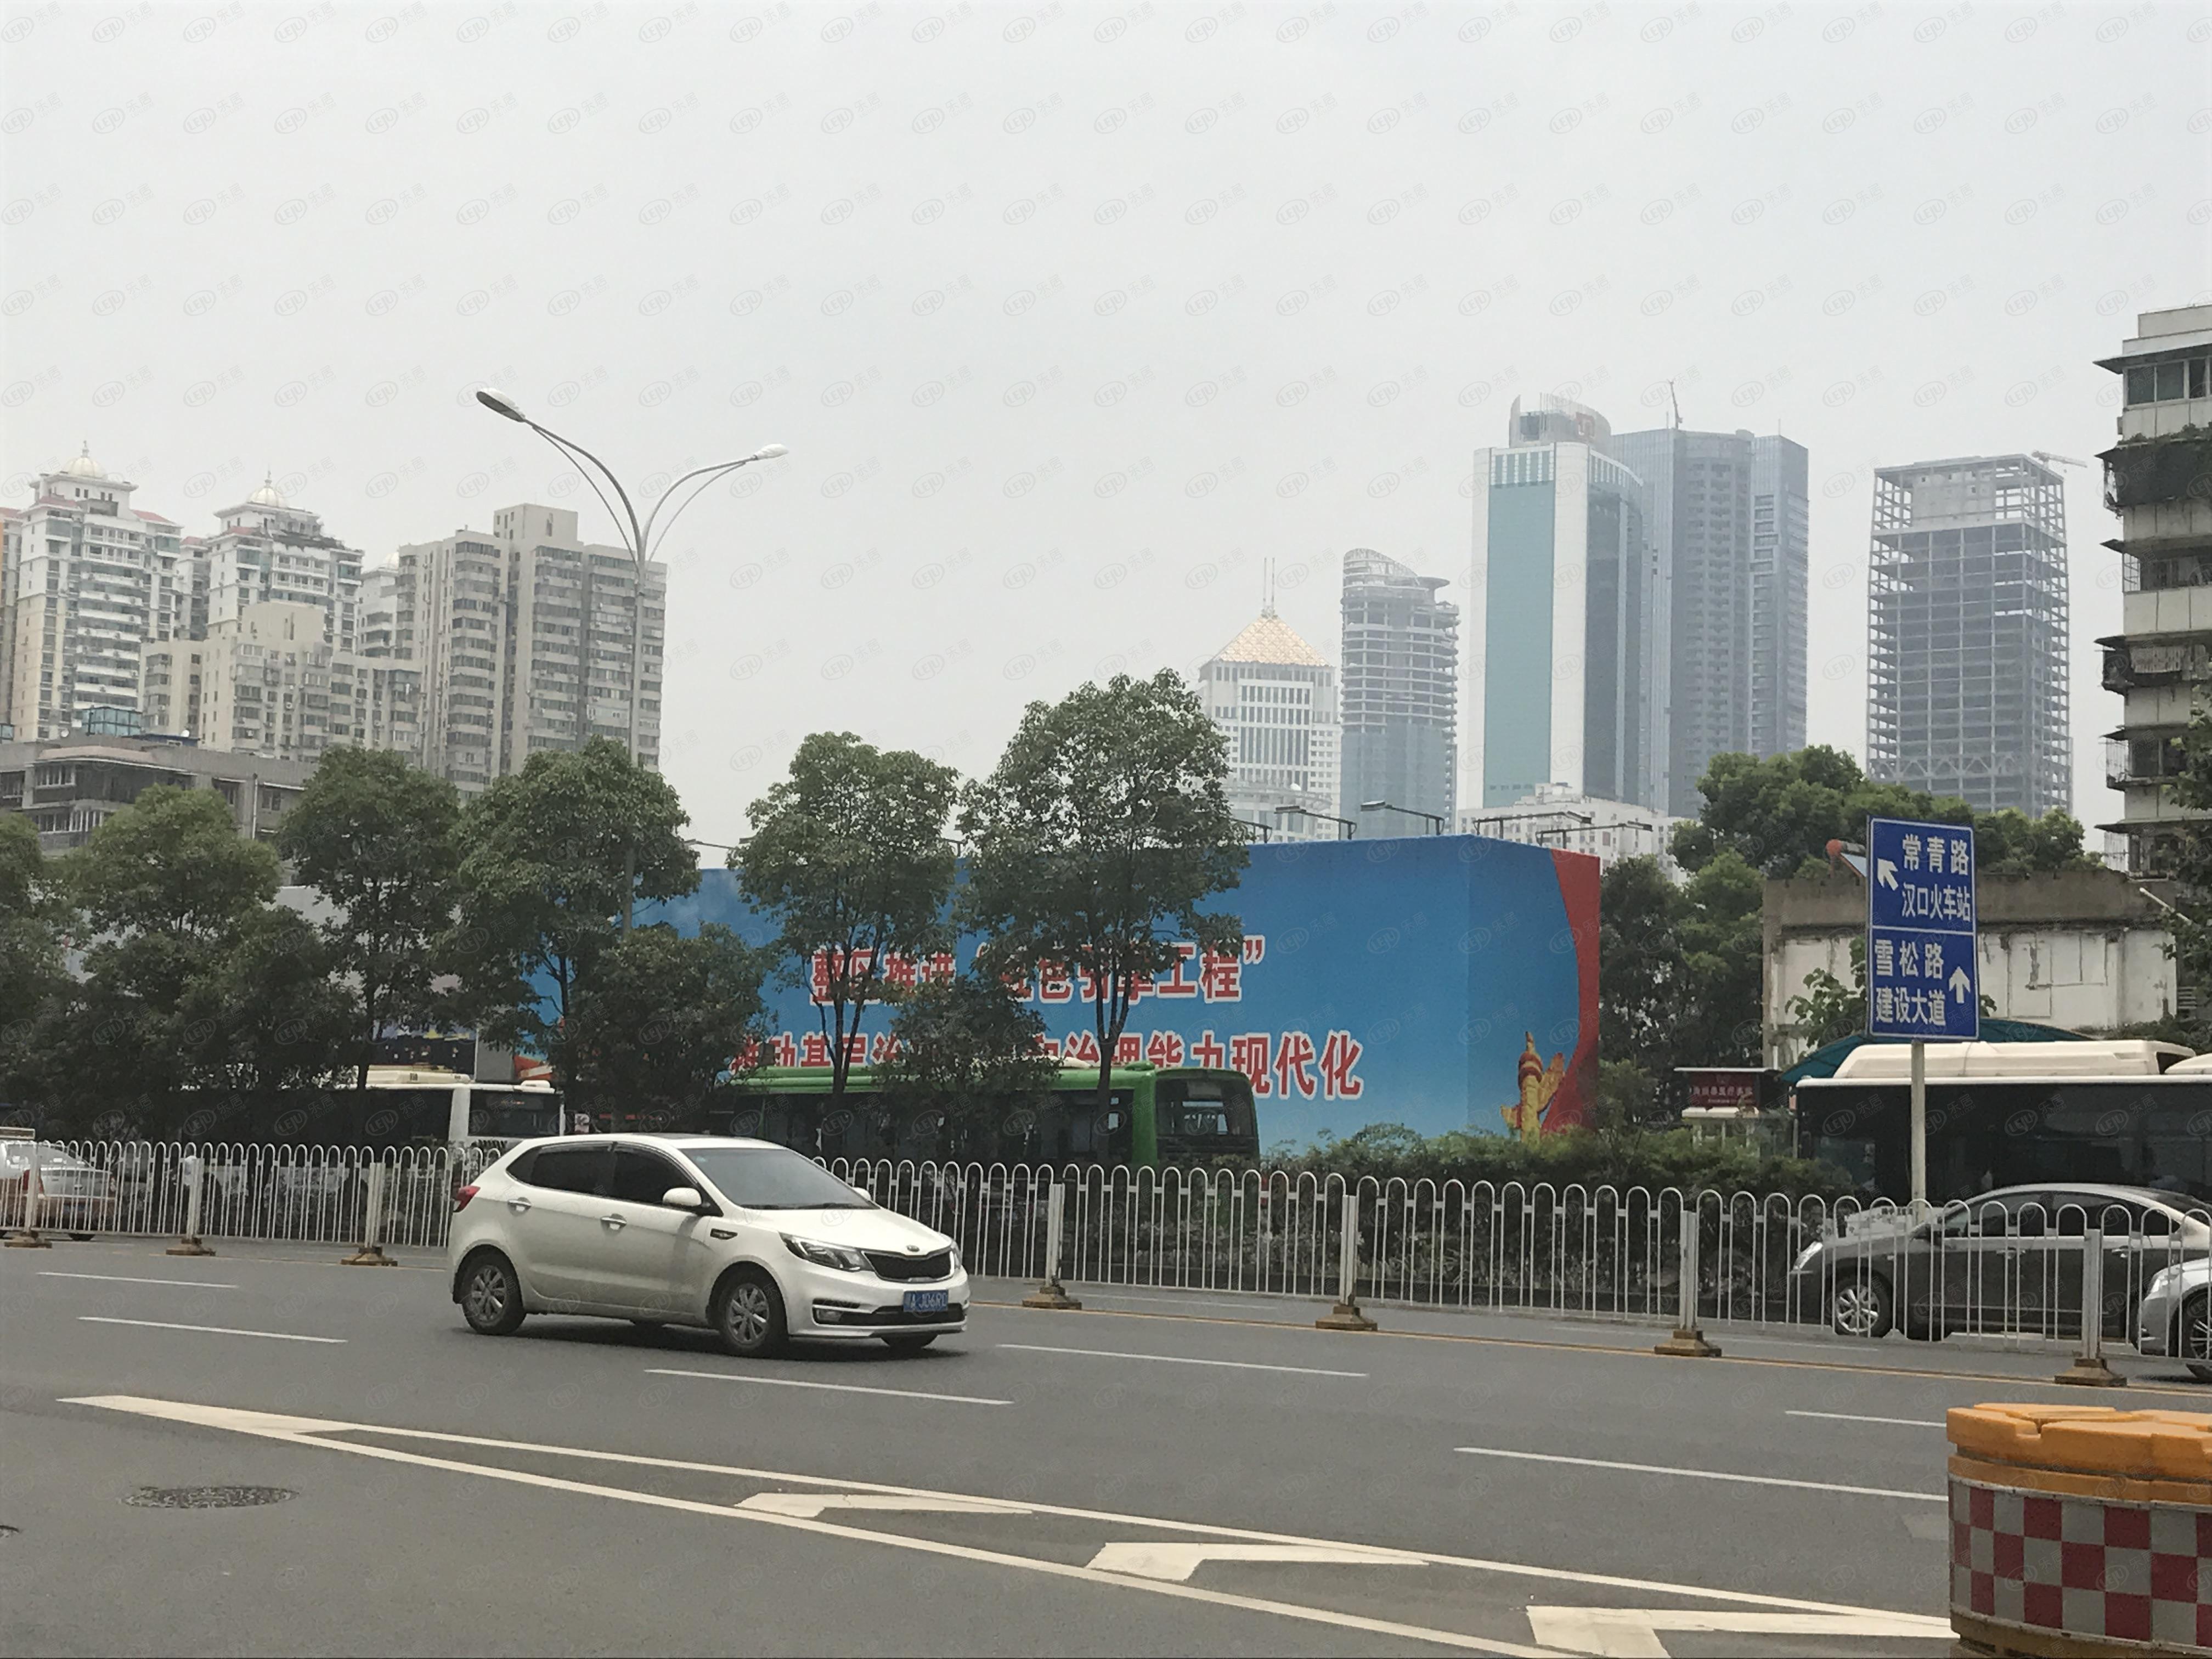 江汉ICC武汉环贸中心，坐落于武汉市青年路59号（长江大道与建设大道交汇处）毗邻地铁2号线,7号线周边隶属于武广，价格大概在23000左右。